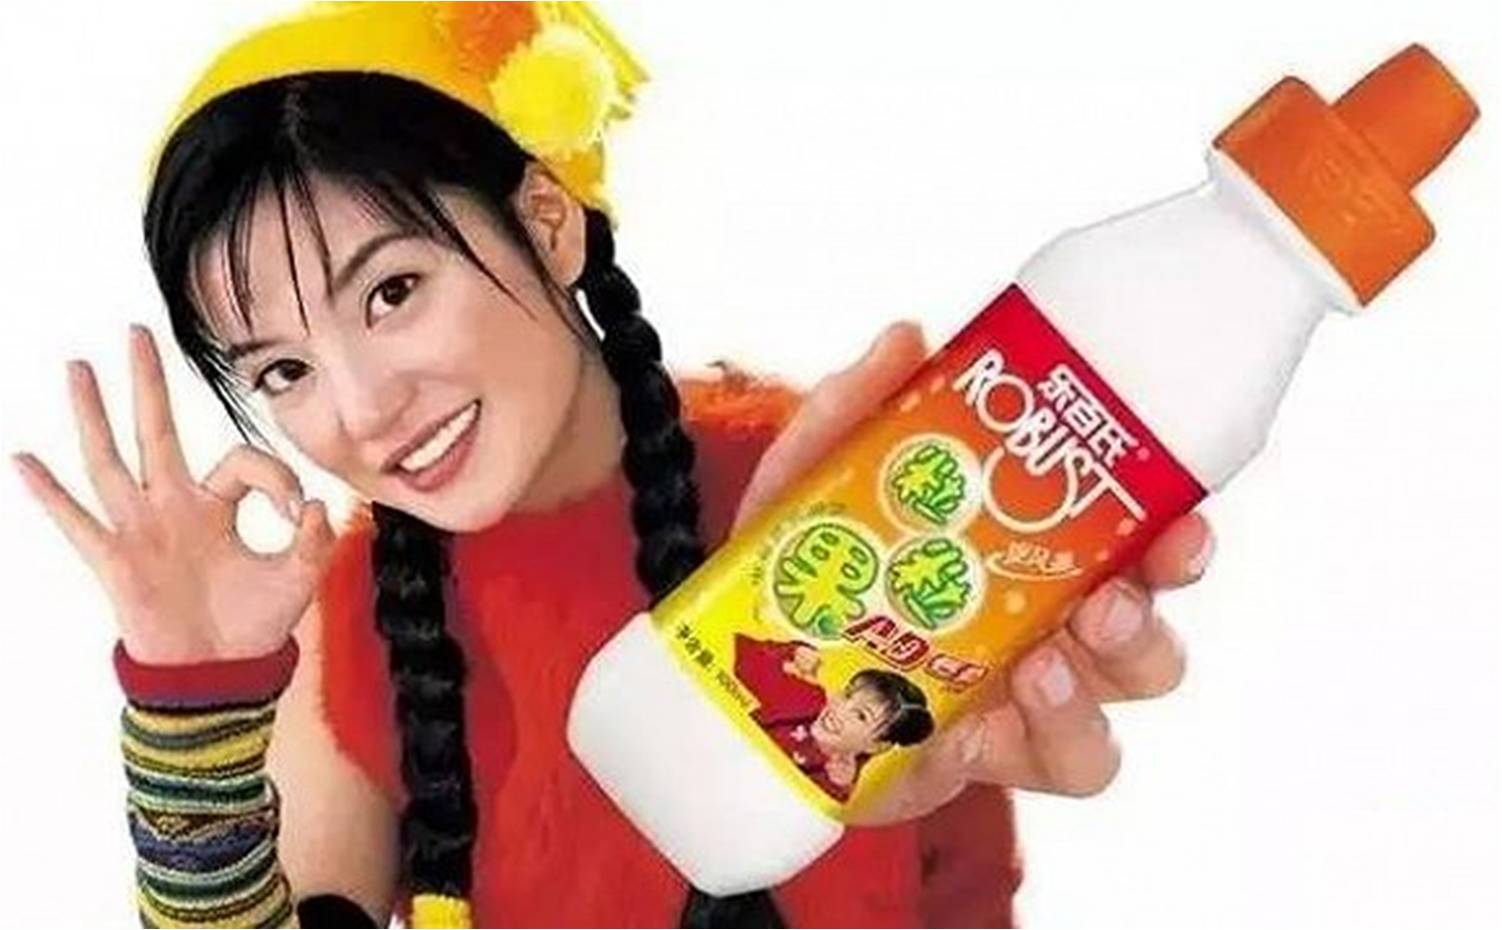 乐百氏酸奶广告图片